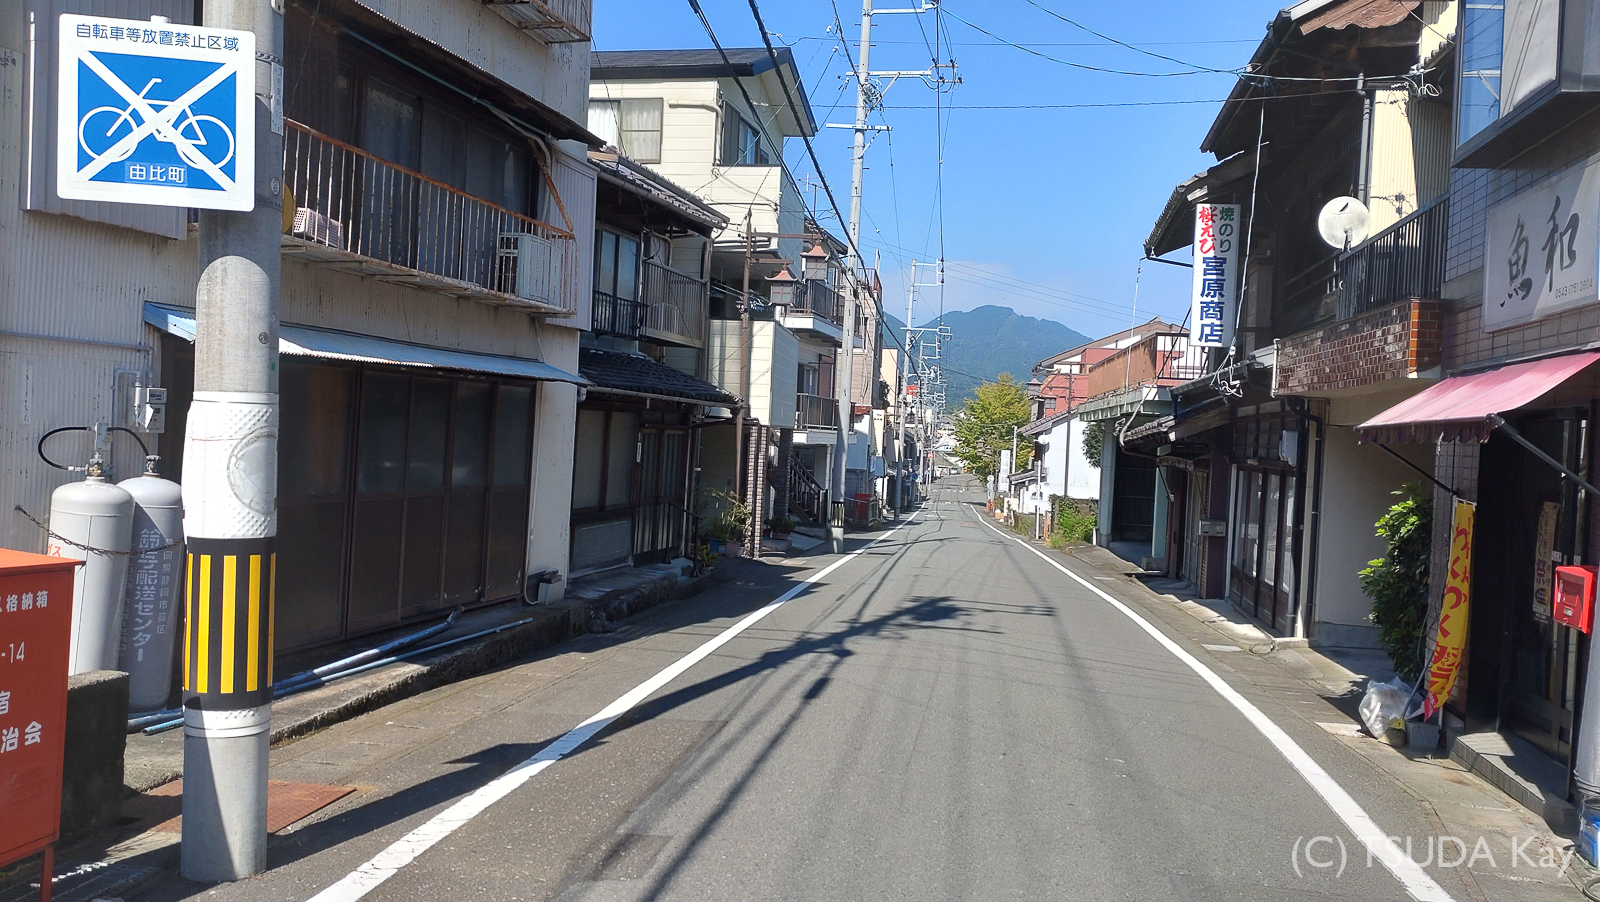 I cycled from mishima to shizuoka 13